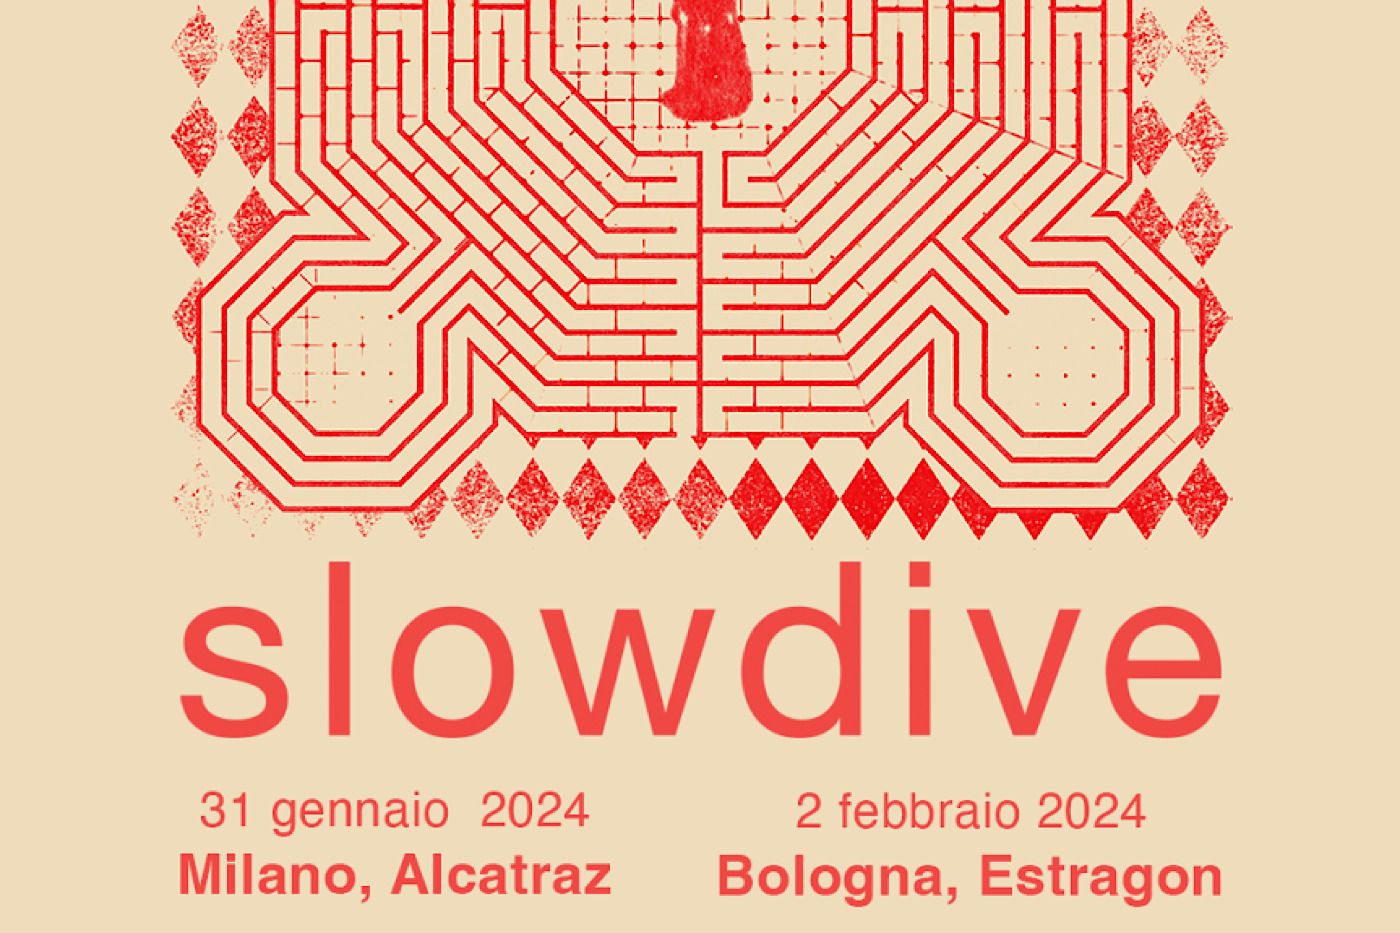 SLOWDIVE live in Italia: sold out il 2 febbraio all’Estragon di Bologna, ultimi biglietti per l’Alcatraz di Milano il 31 gennaio